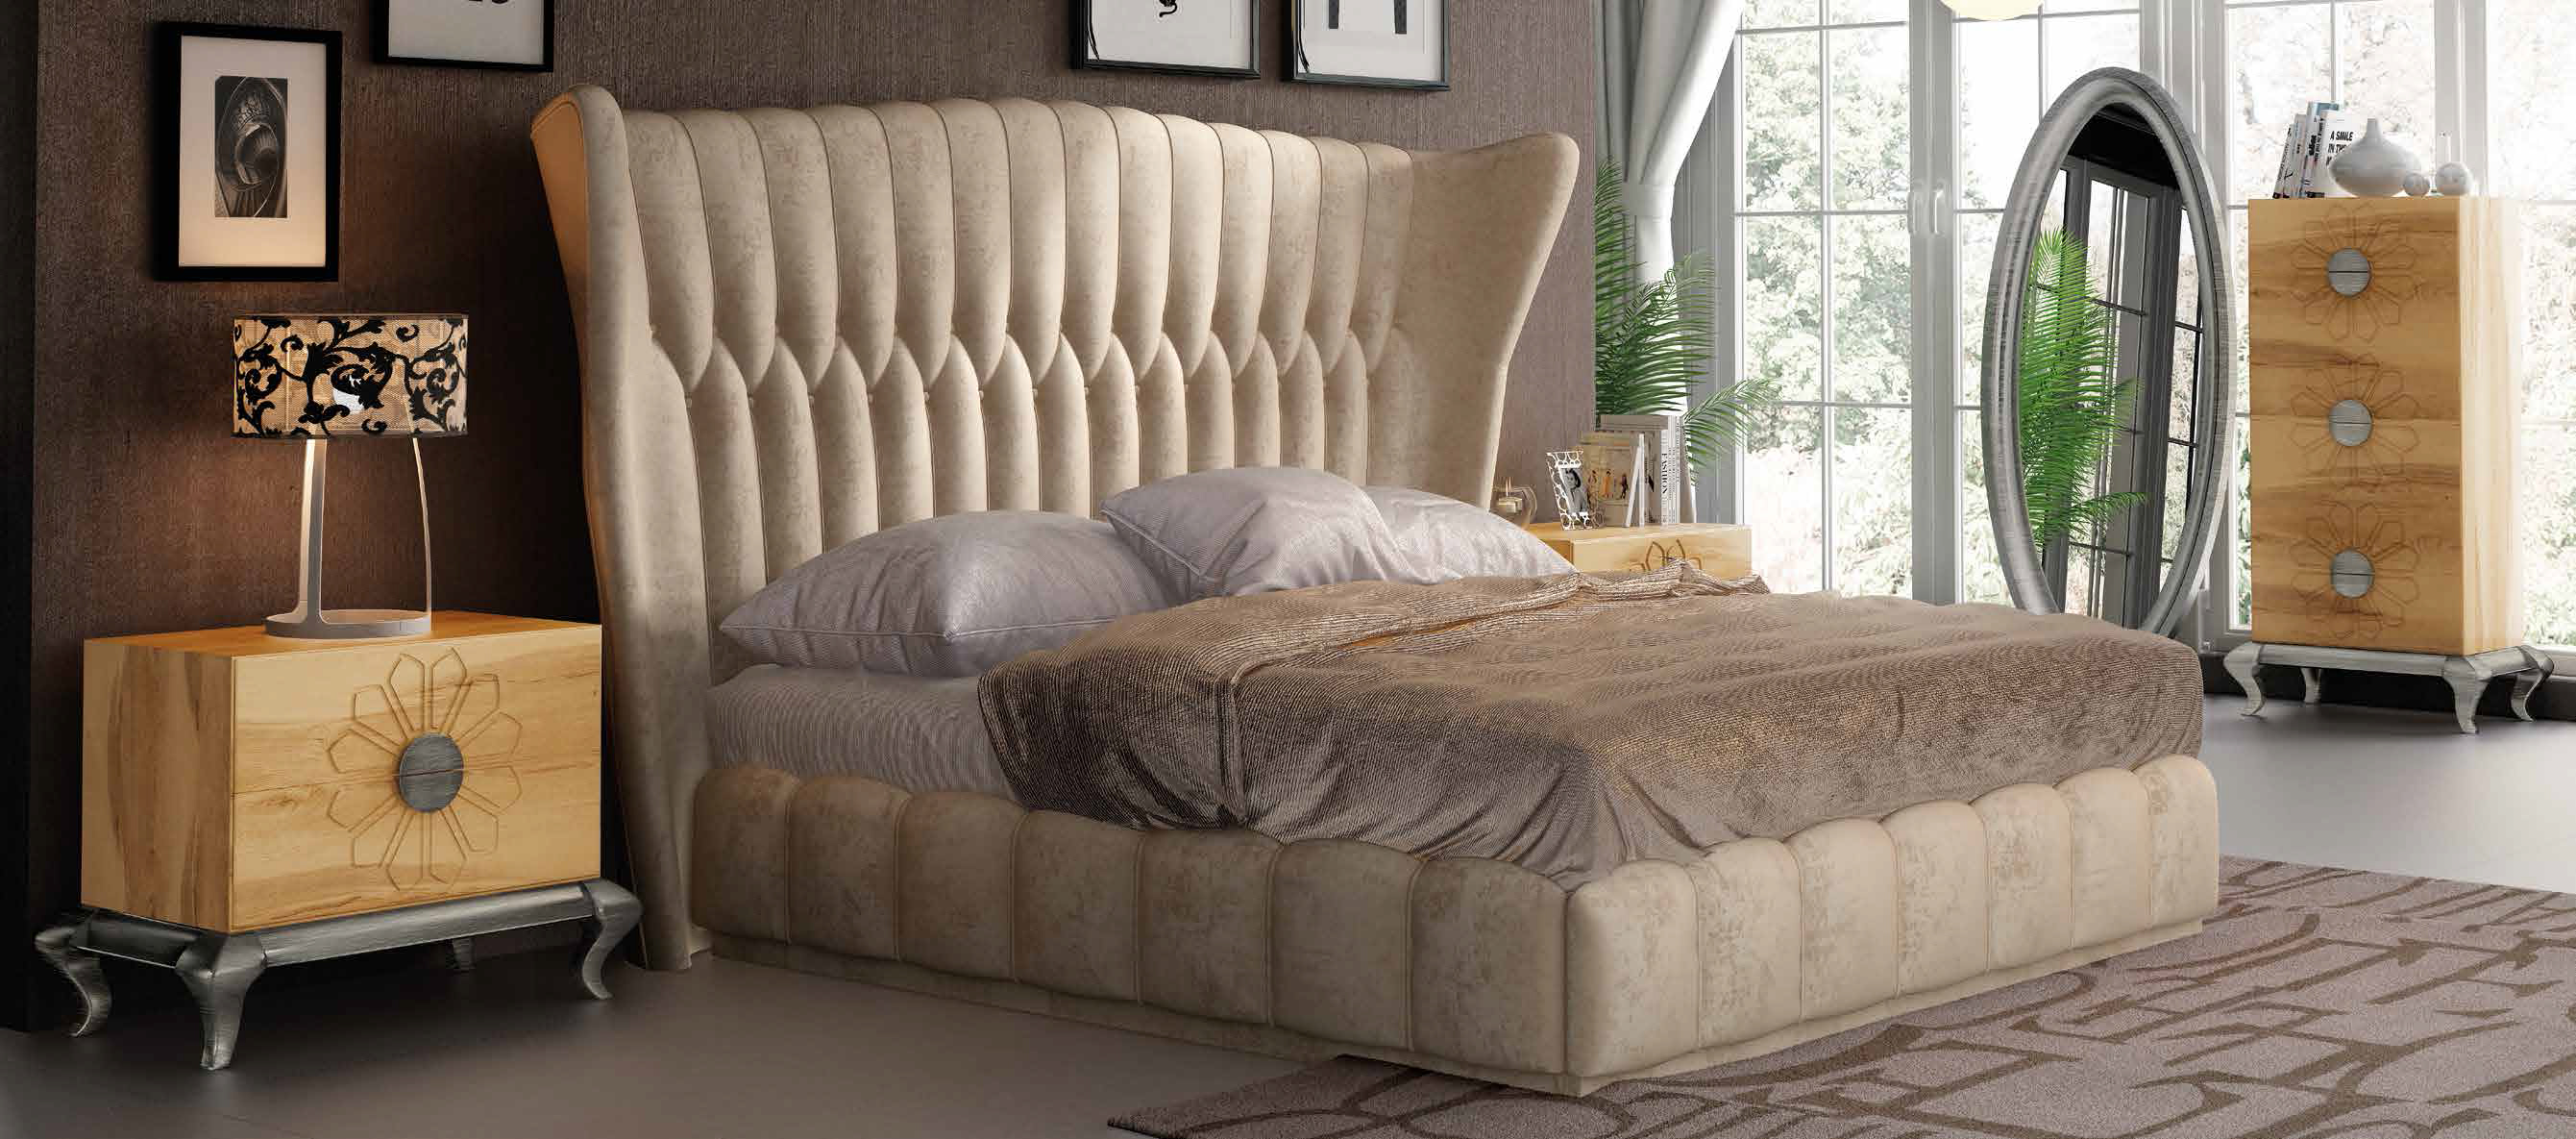 Bedroom Furniture Nightstands DOR 61